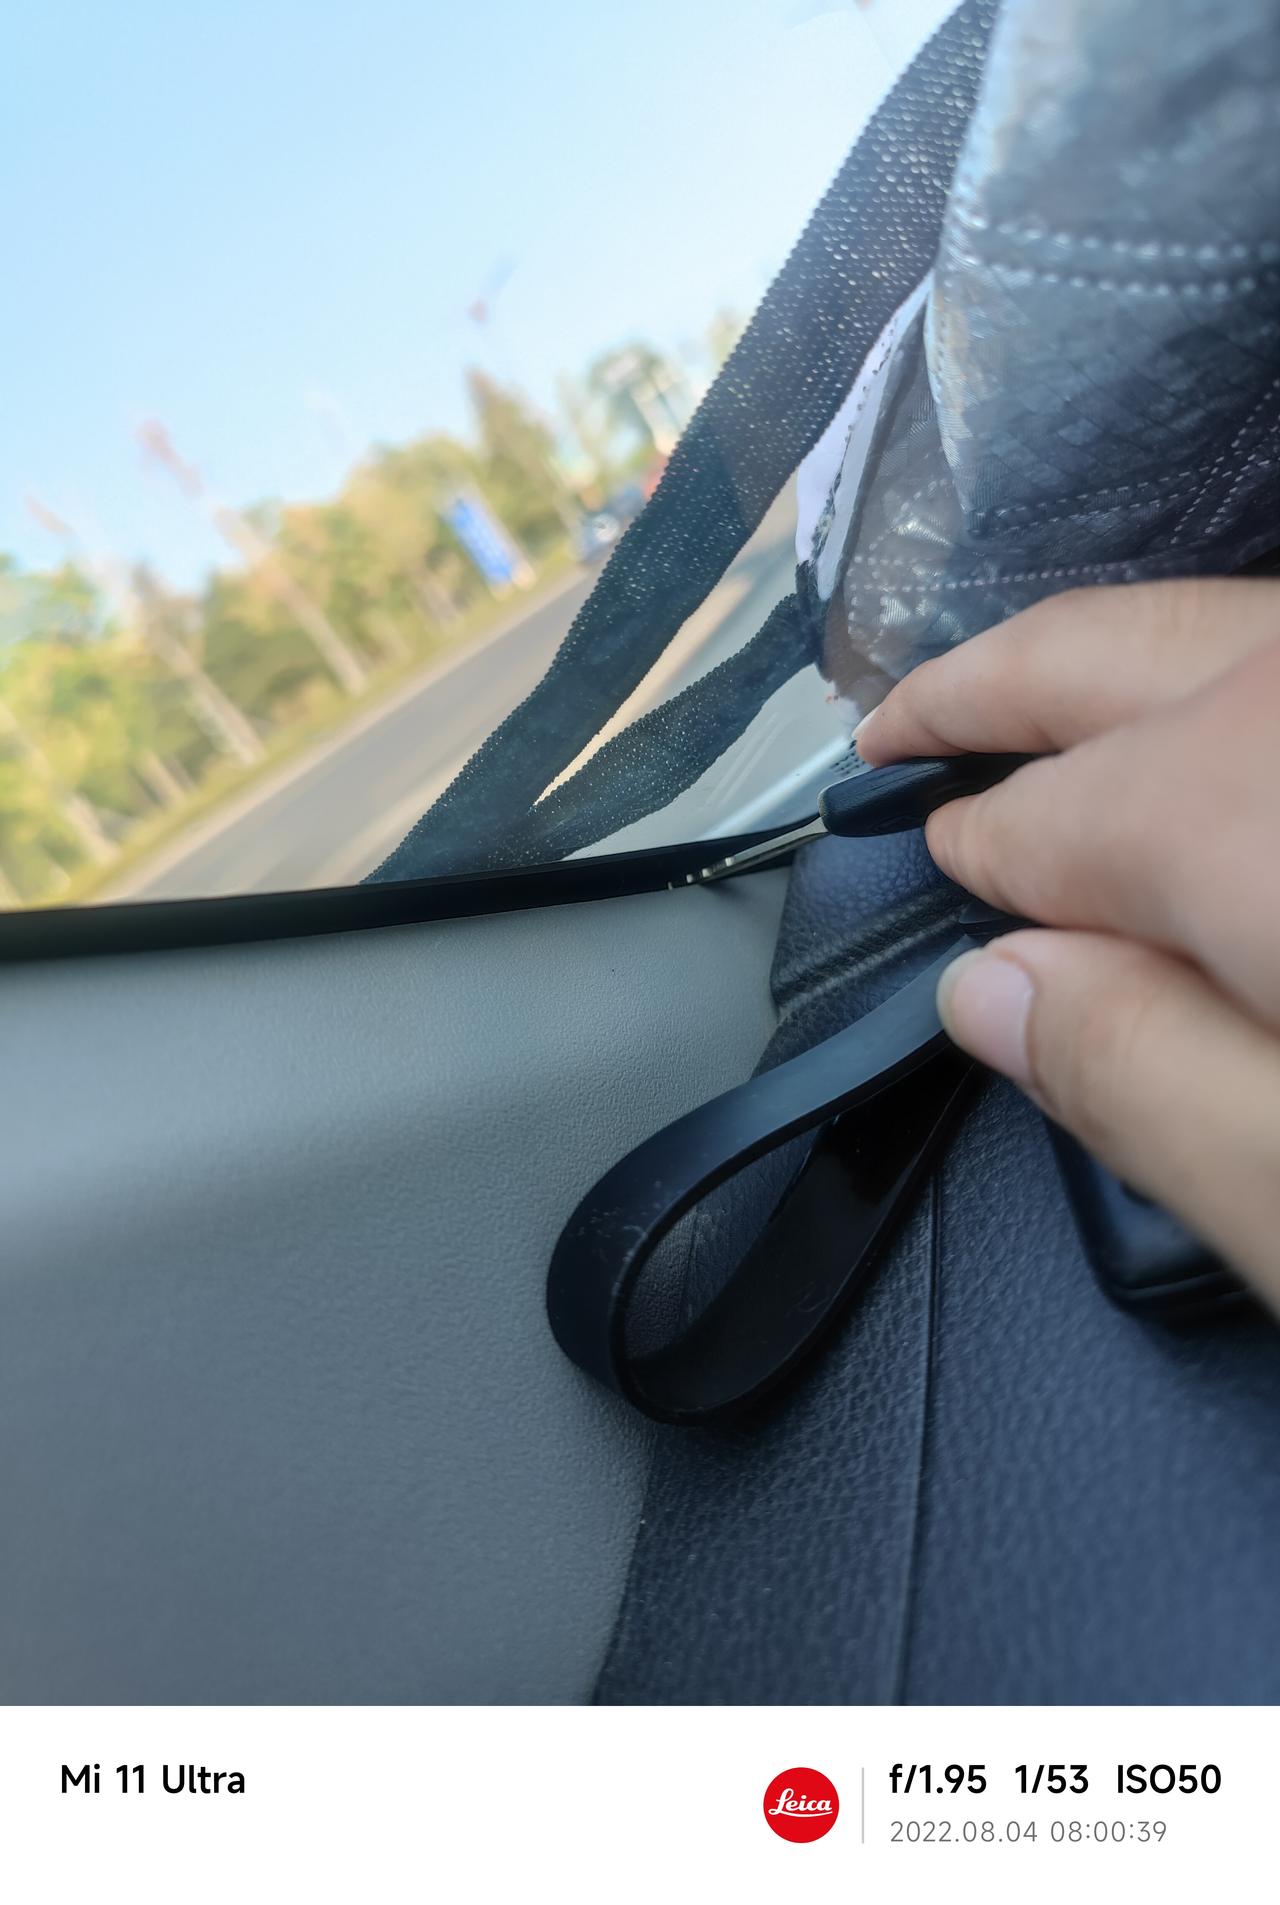 丰田YARiS L 致炫 这个车的前挡玻璃这个夹角这里有缝隙能塞下车钥匙这个正常吗？